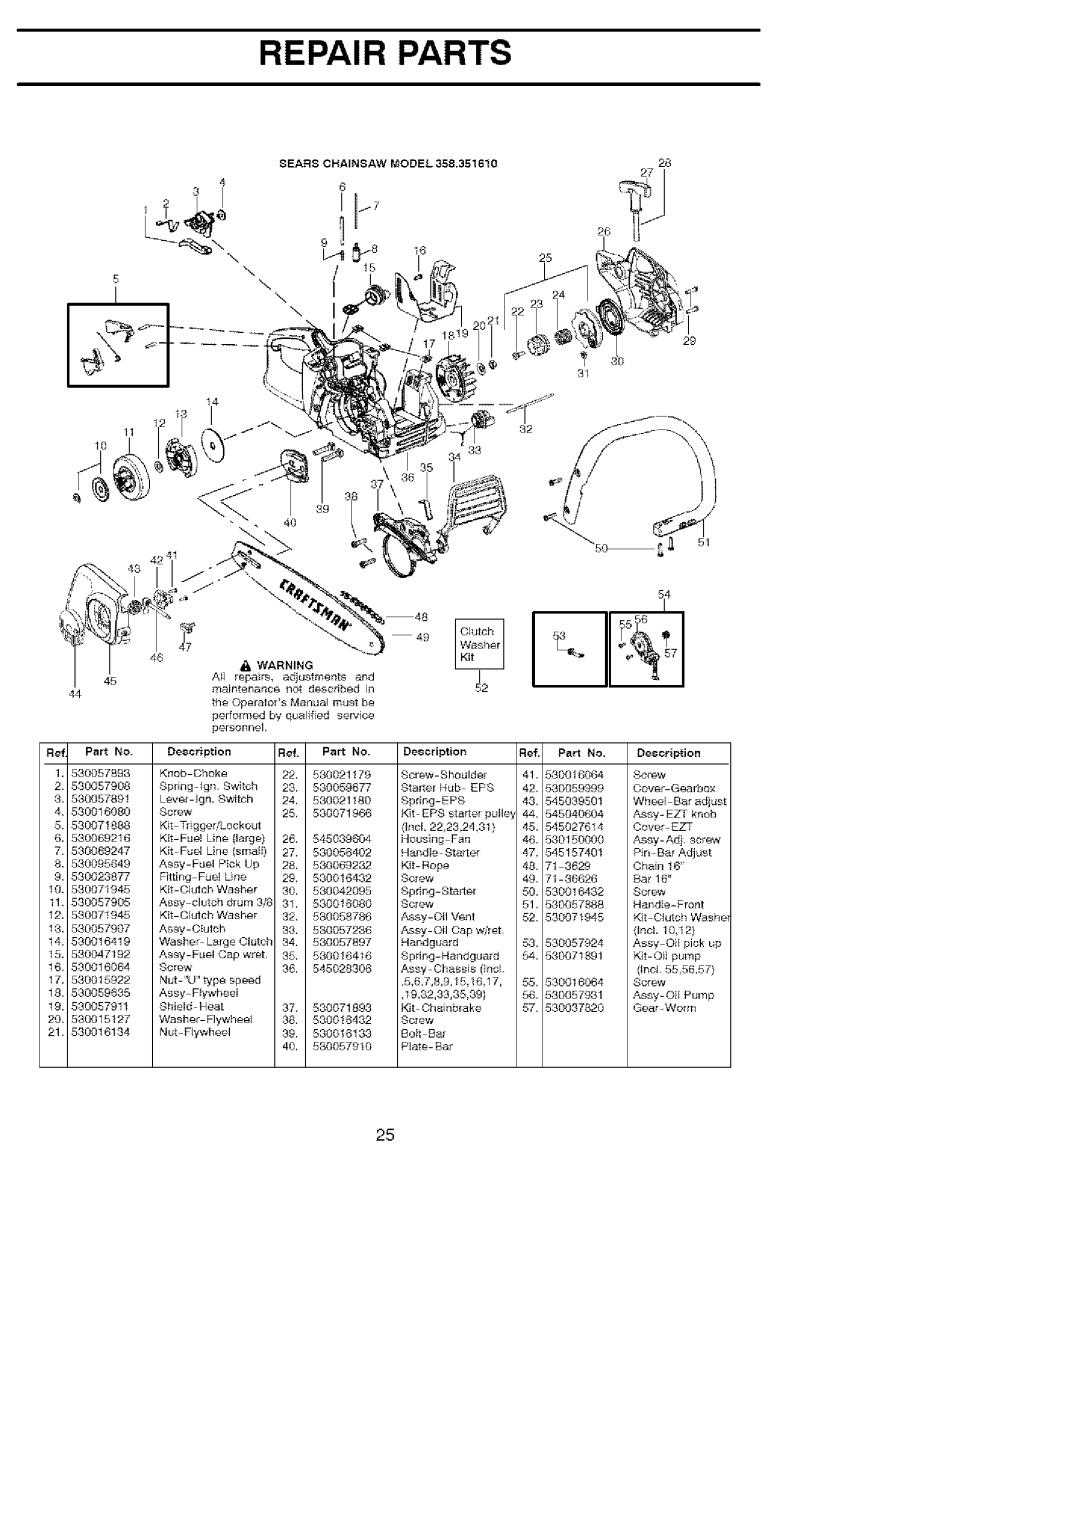 Craftsman 358.35161 manual Repair Parts, 36626, Sta_er, Front 